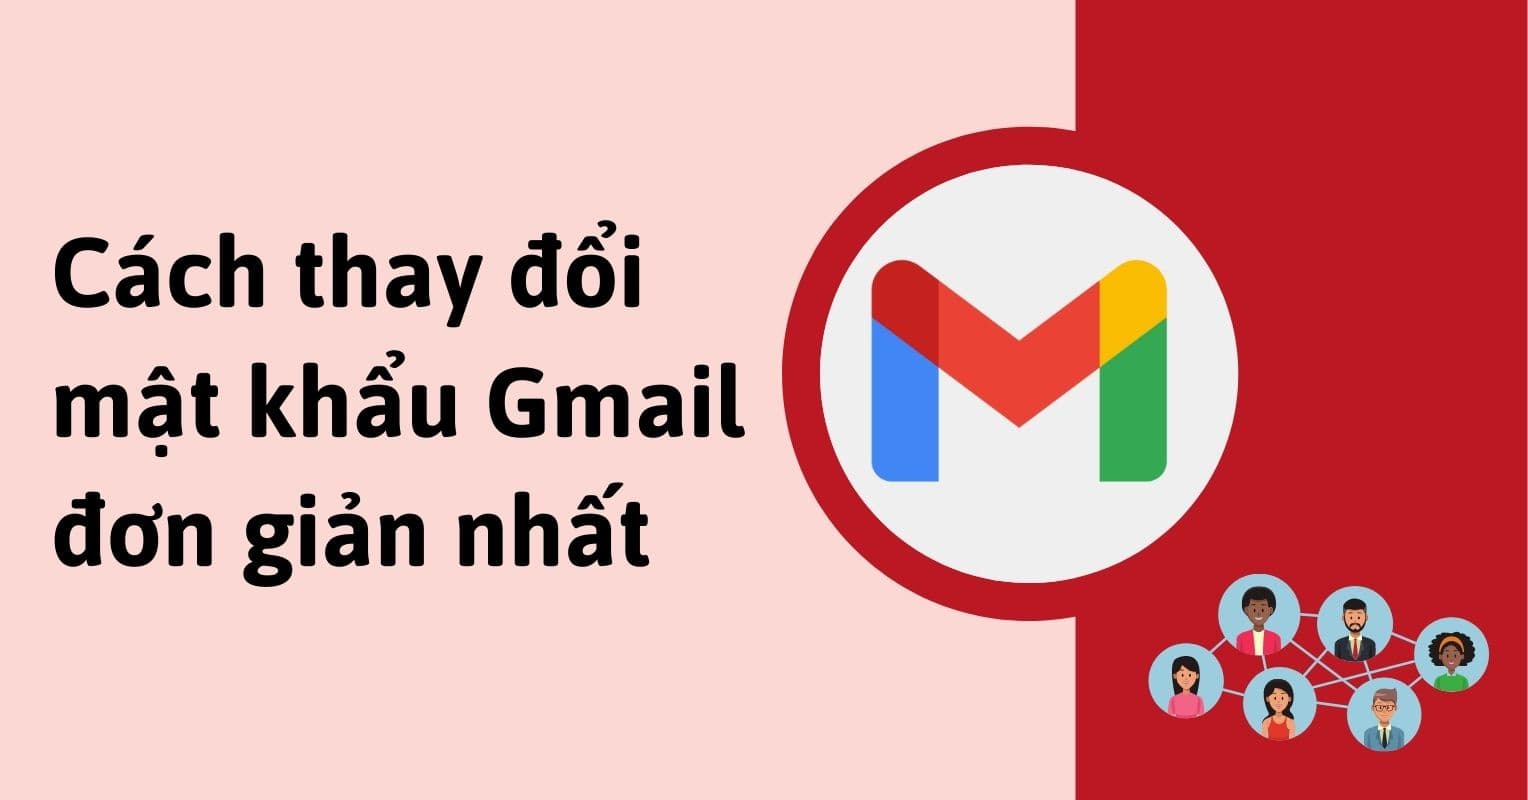 Hướng dẫn cách đổi mật khẩu Gmail chi tiết trên điện thoại và máy tính